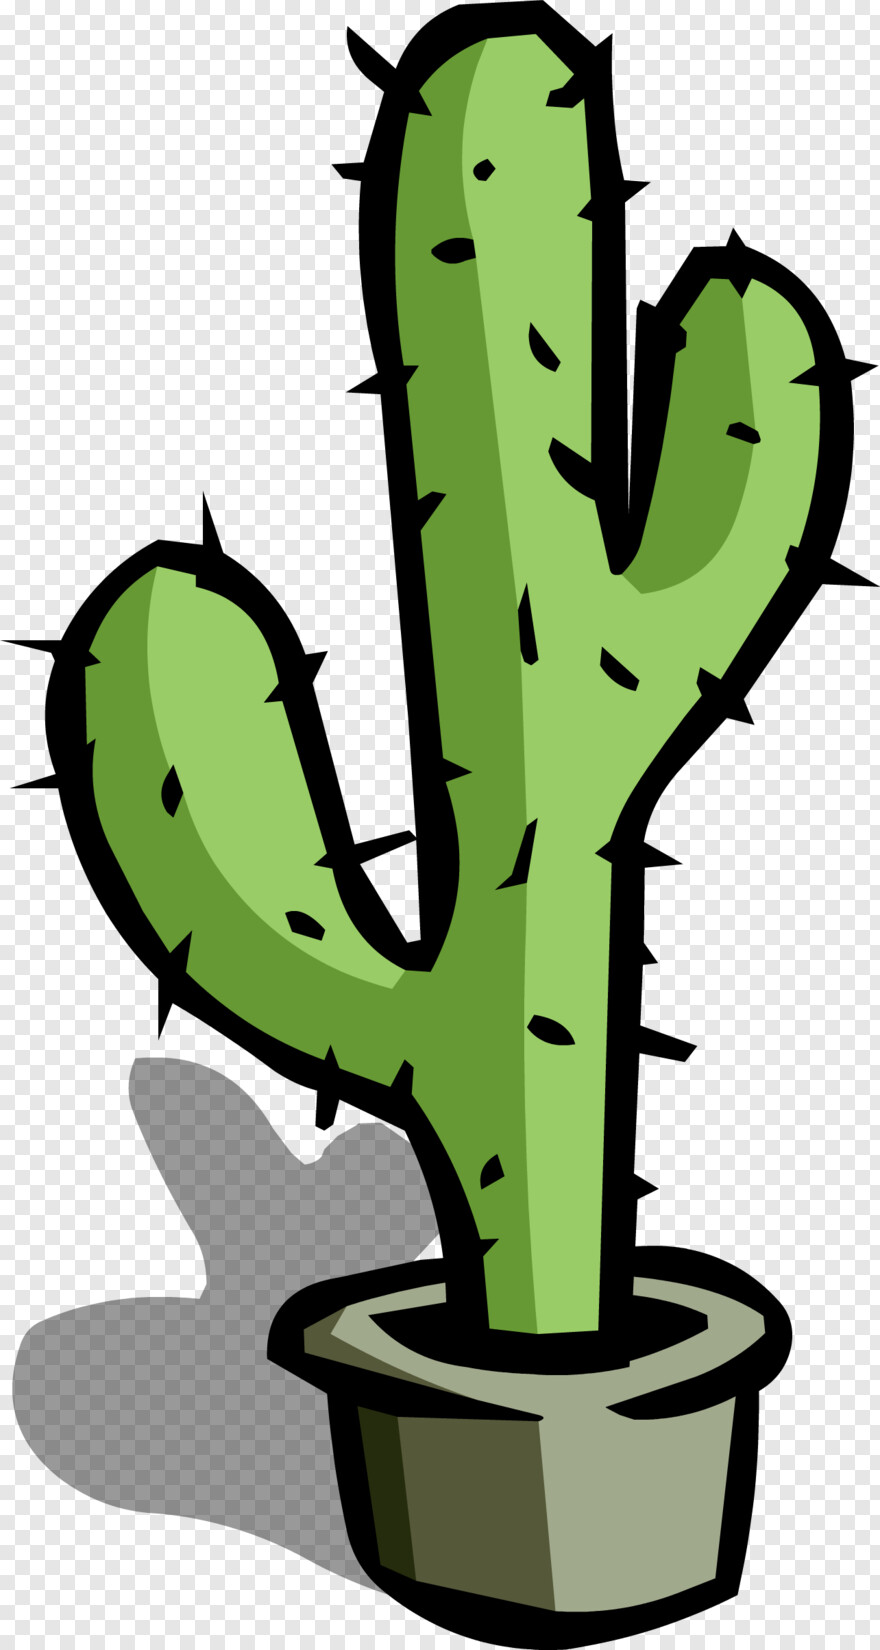 Cactus Clipart, Cactus Vector, Cactus Silhouette, Cactus, Sprite Bottle,  Sprite Can #1088938 - Free Icon Library